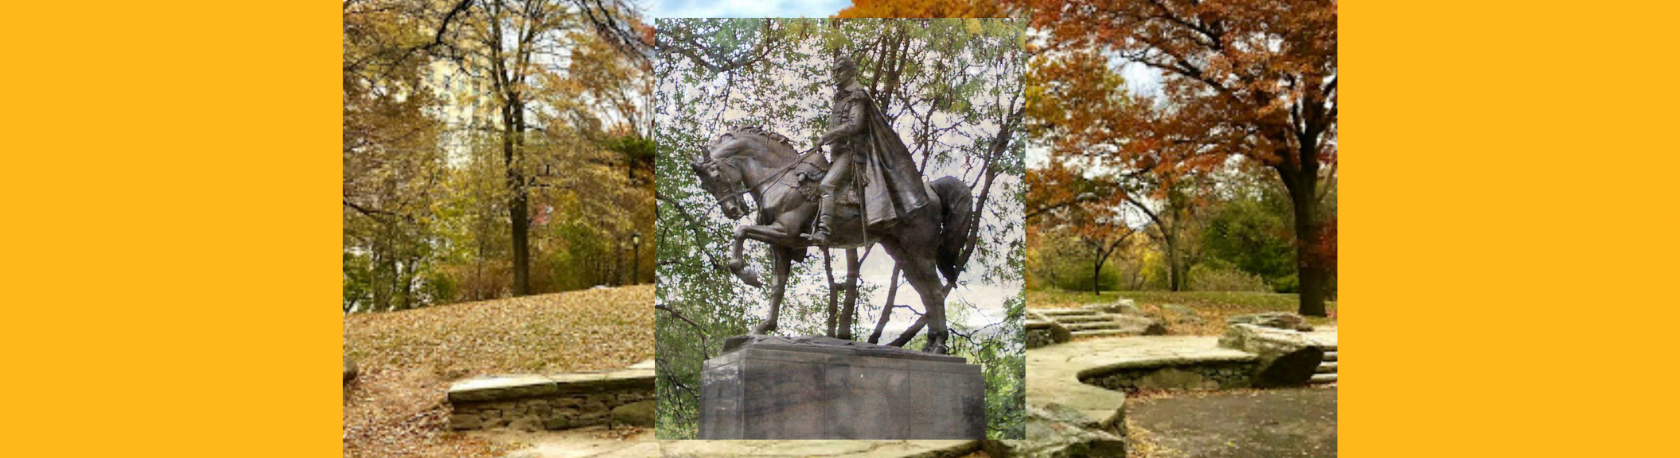 ¿Sabías que el monumento de Simón Bolívar en Central Park se encontraba originalmente en Summit Rock? - Easy Español